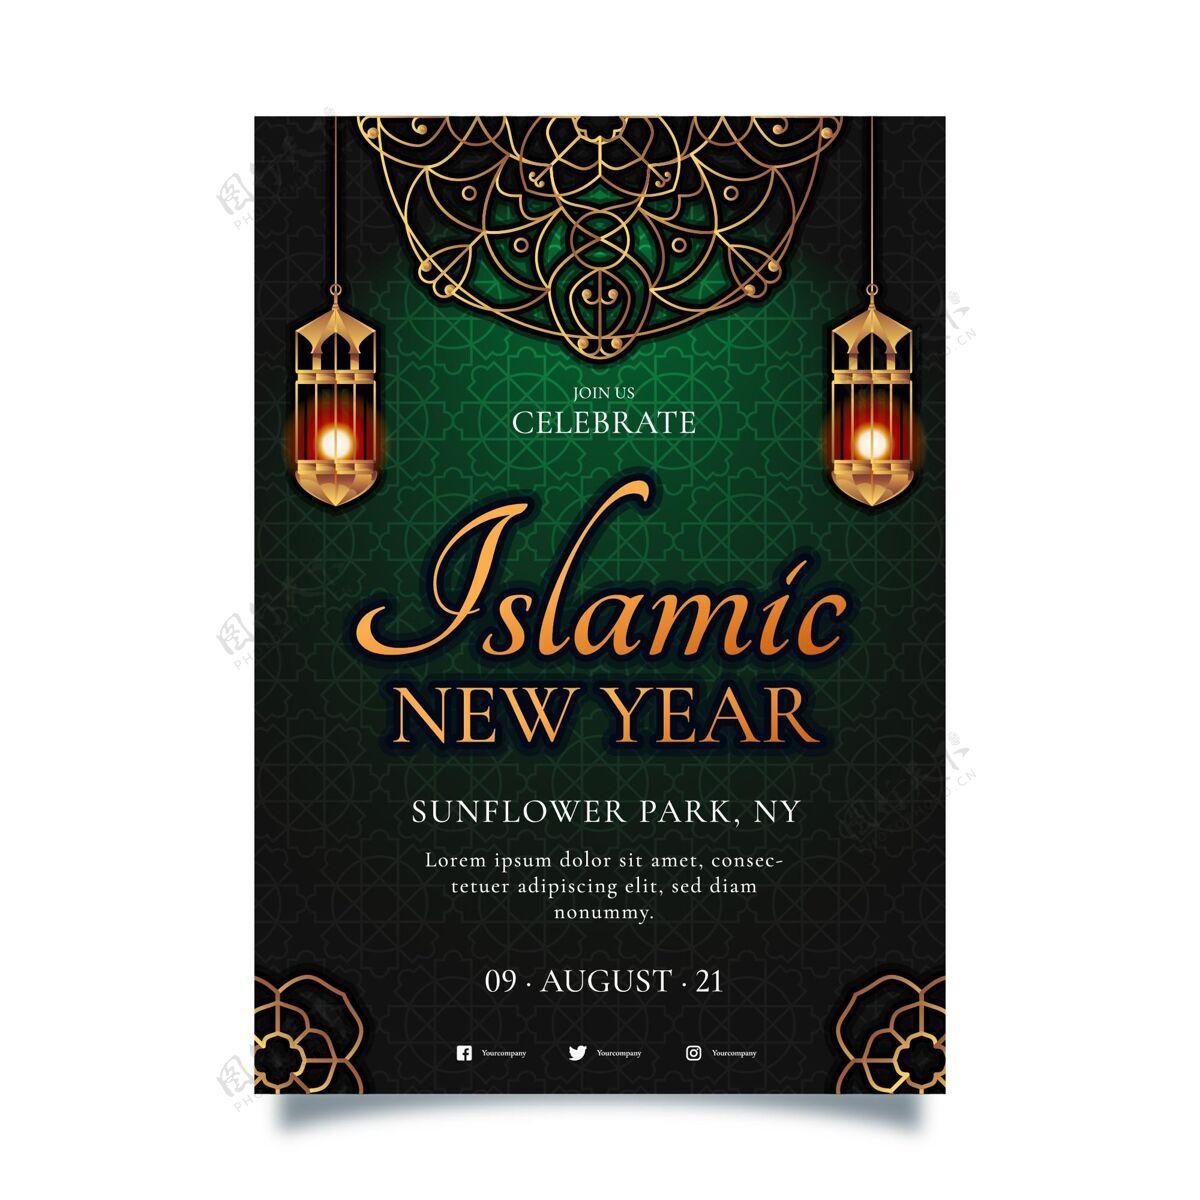 回历新年梯度伊斯兰新年垂直海报模板伊斯兰伊斯兰新年活动